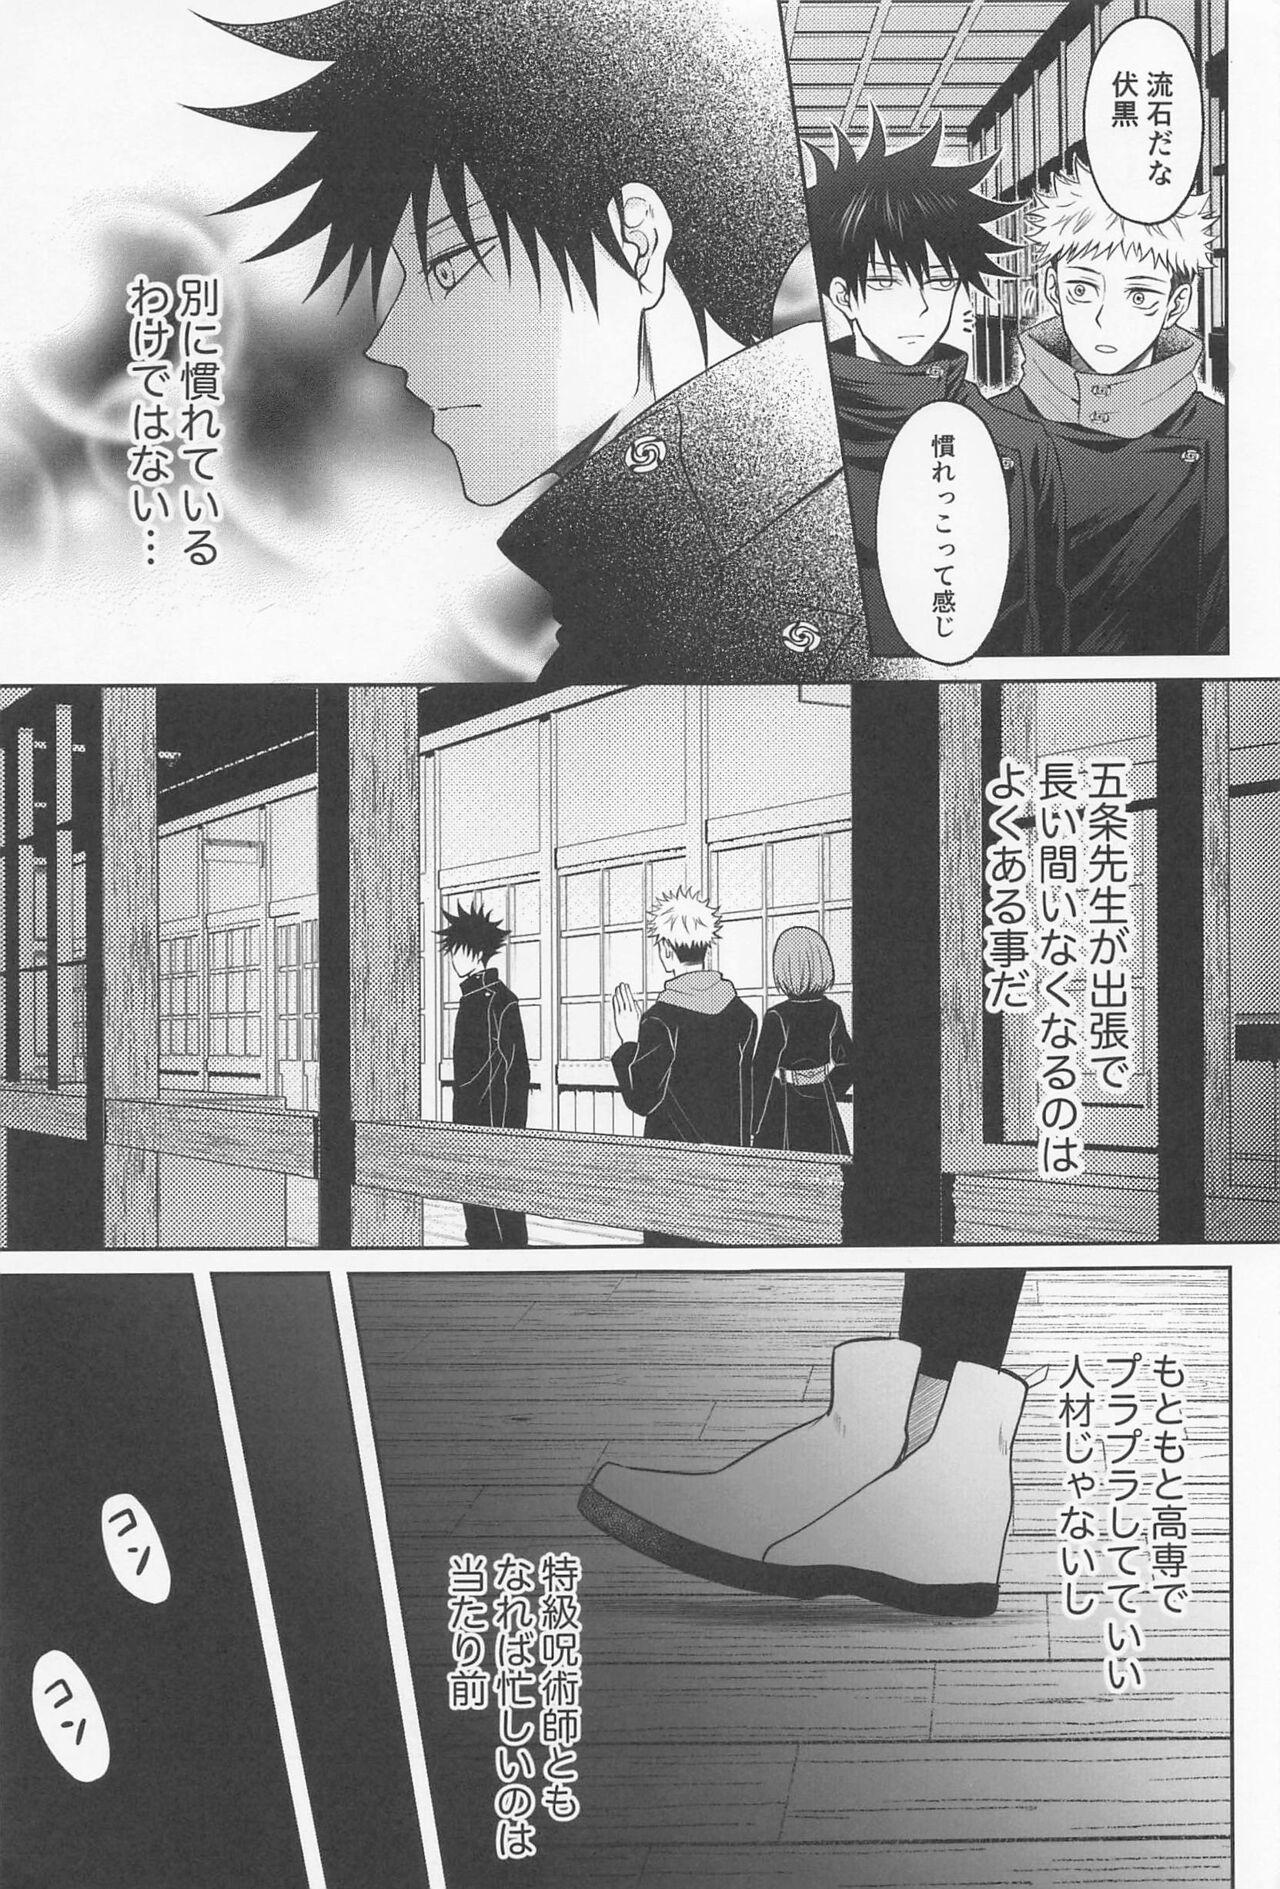 Liveshow Sabishii Yoru wa Anata o Omou - Jujutsu kaisen Brother - Page 6